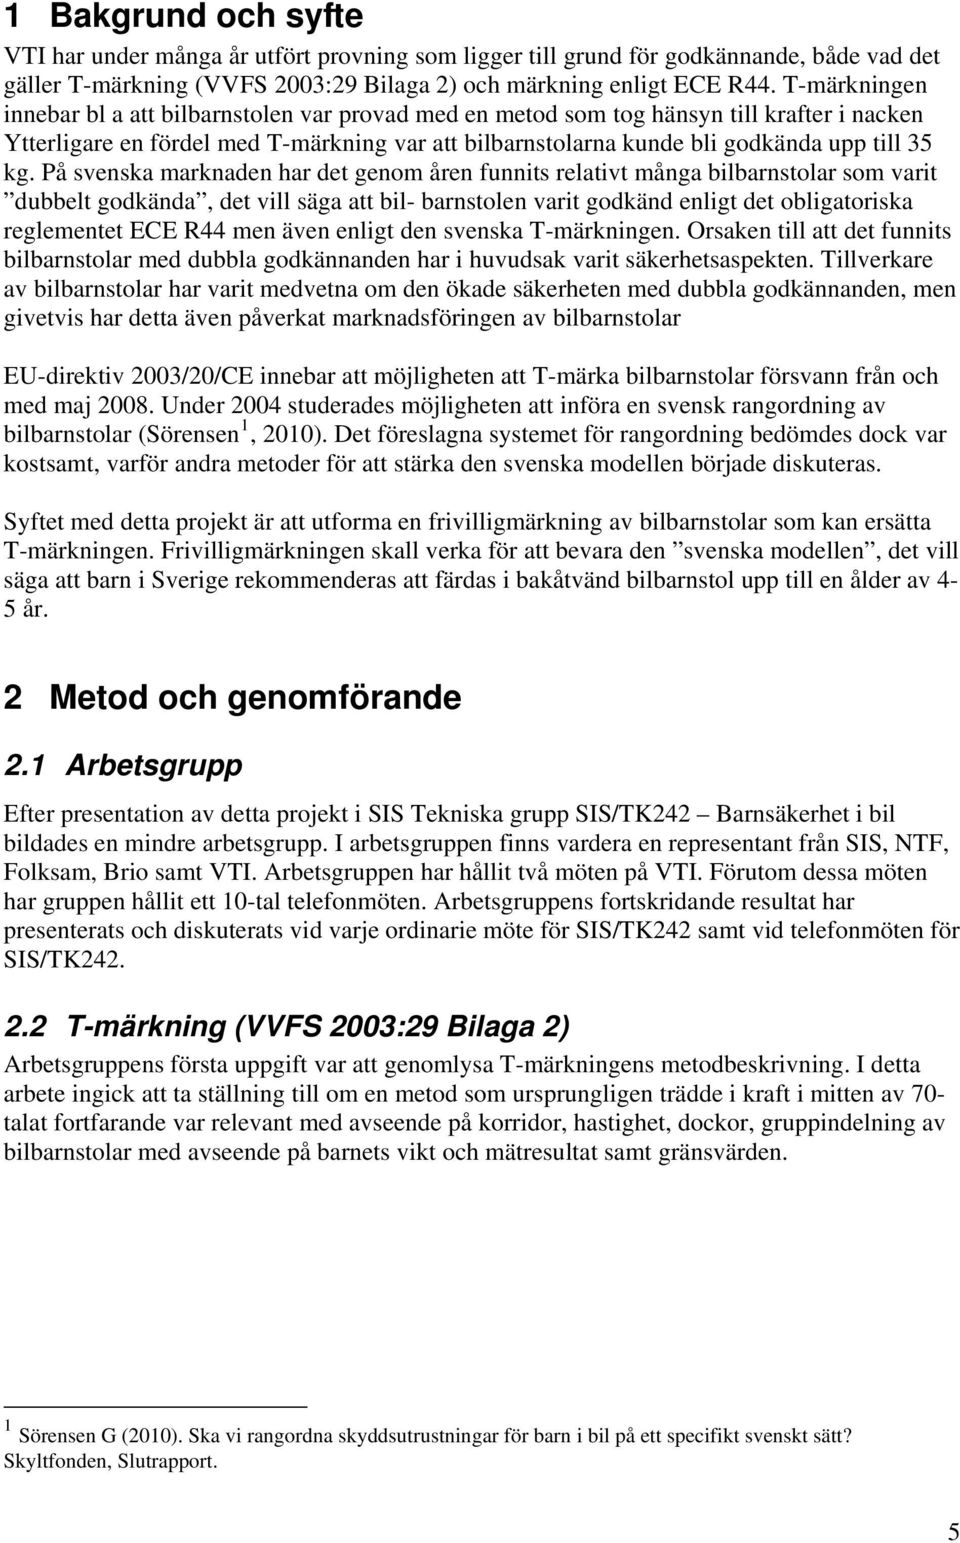 På svenska marknaden har det genom åren funnits relativt många bilbarnstolar som varit dubbelt godkända, det vill säga att bil- barnstolen varit godkänd enligt det obligatoriska reglementet ECE R44